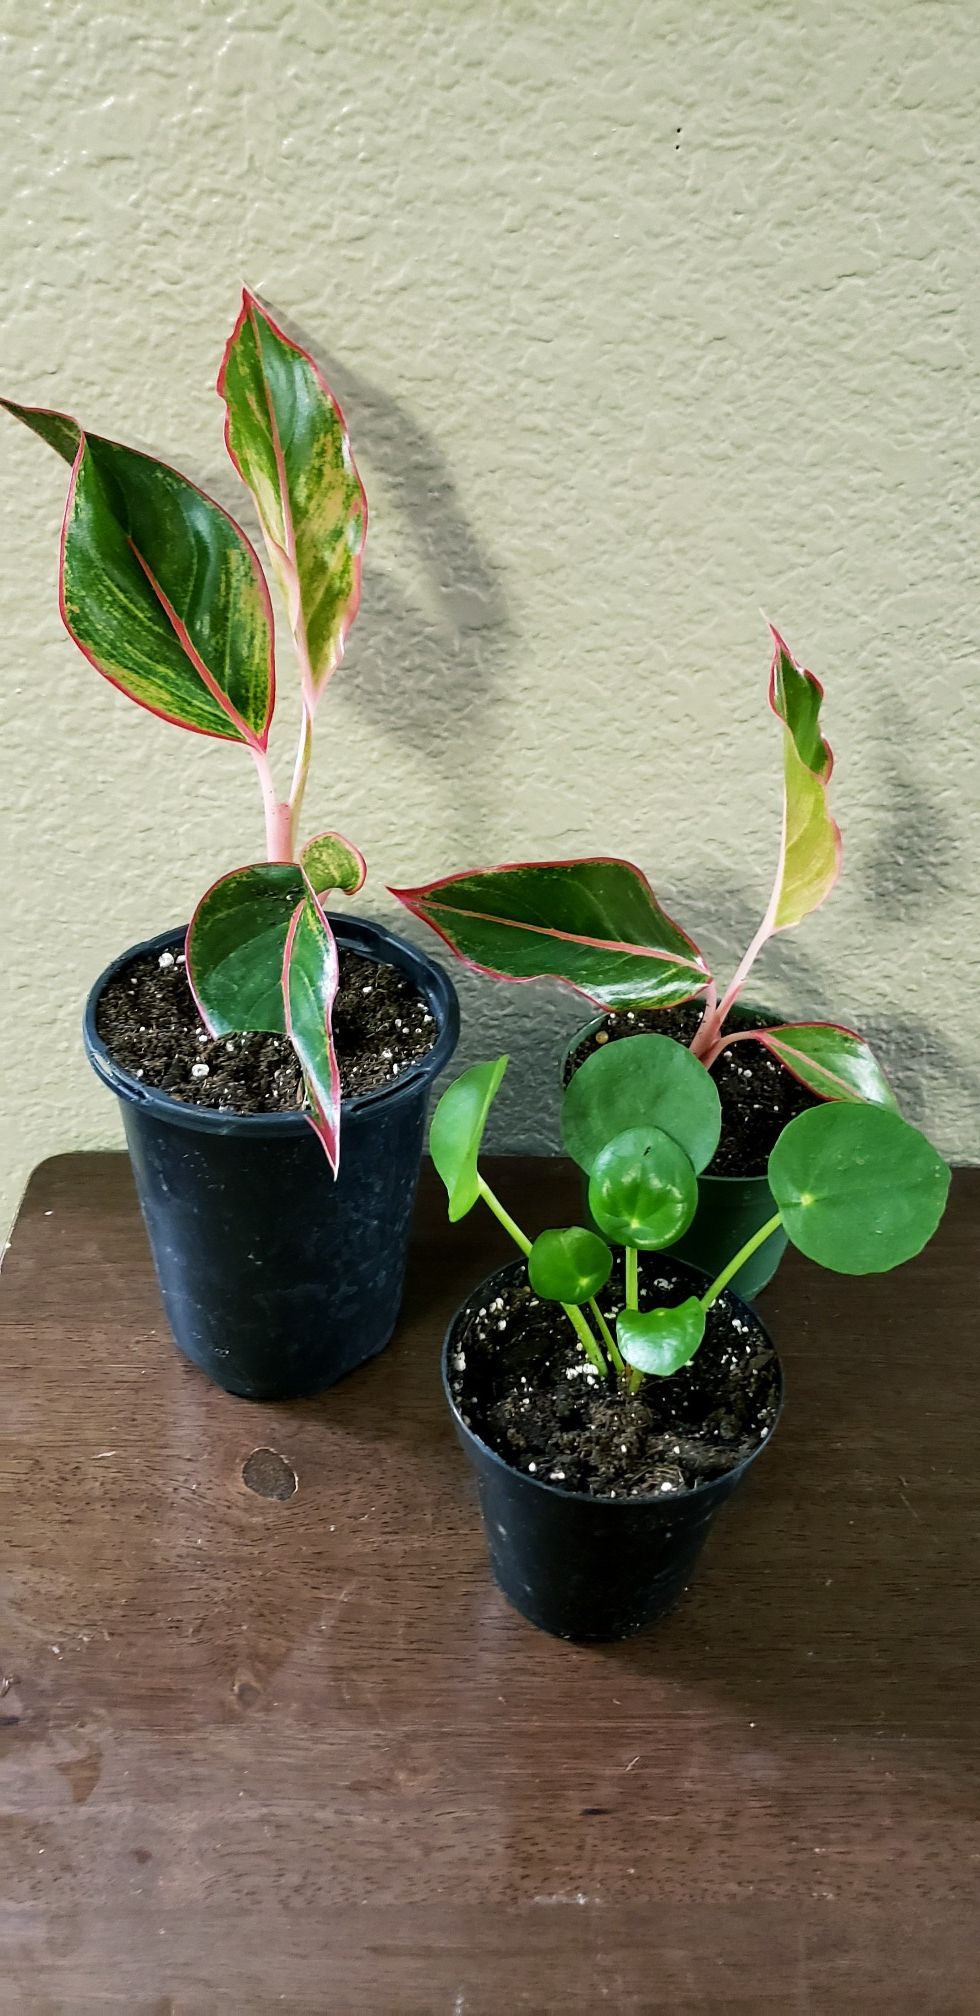 3 live baby plants in 4 inch diameter pots